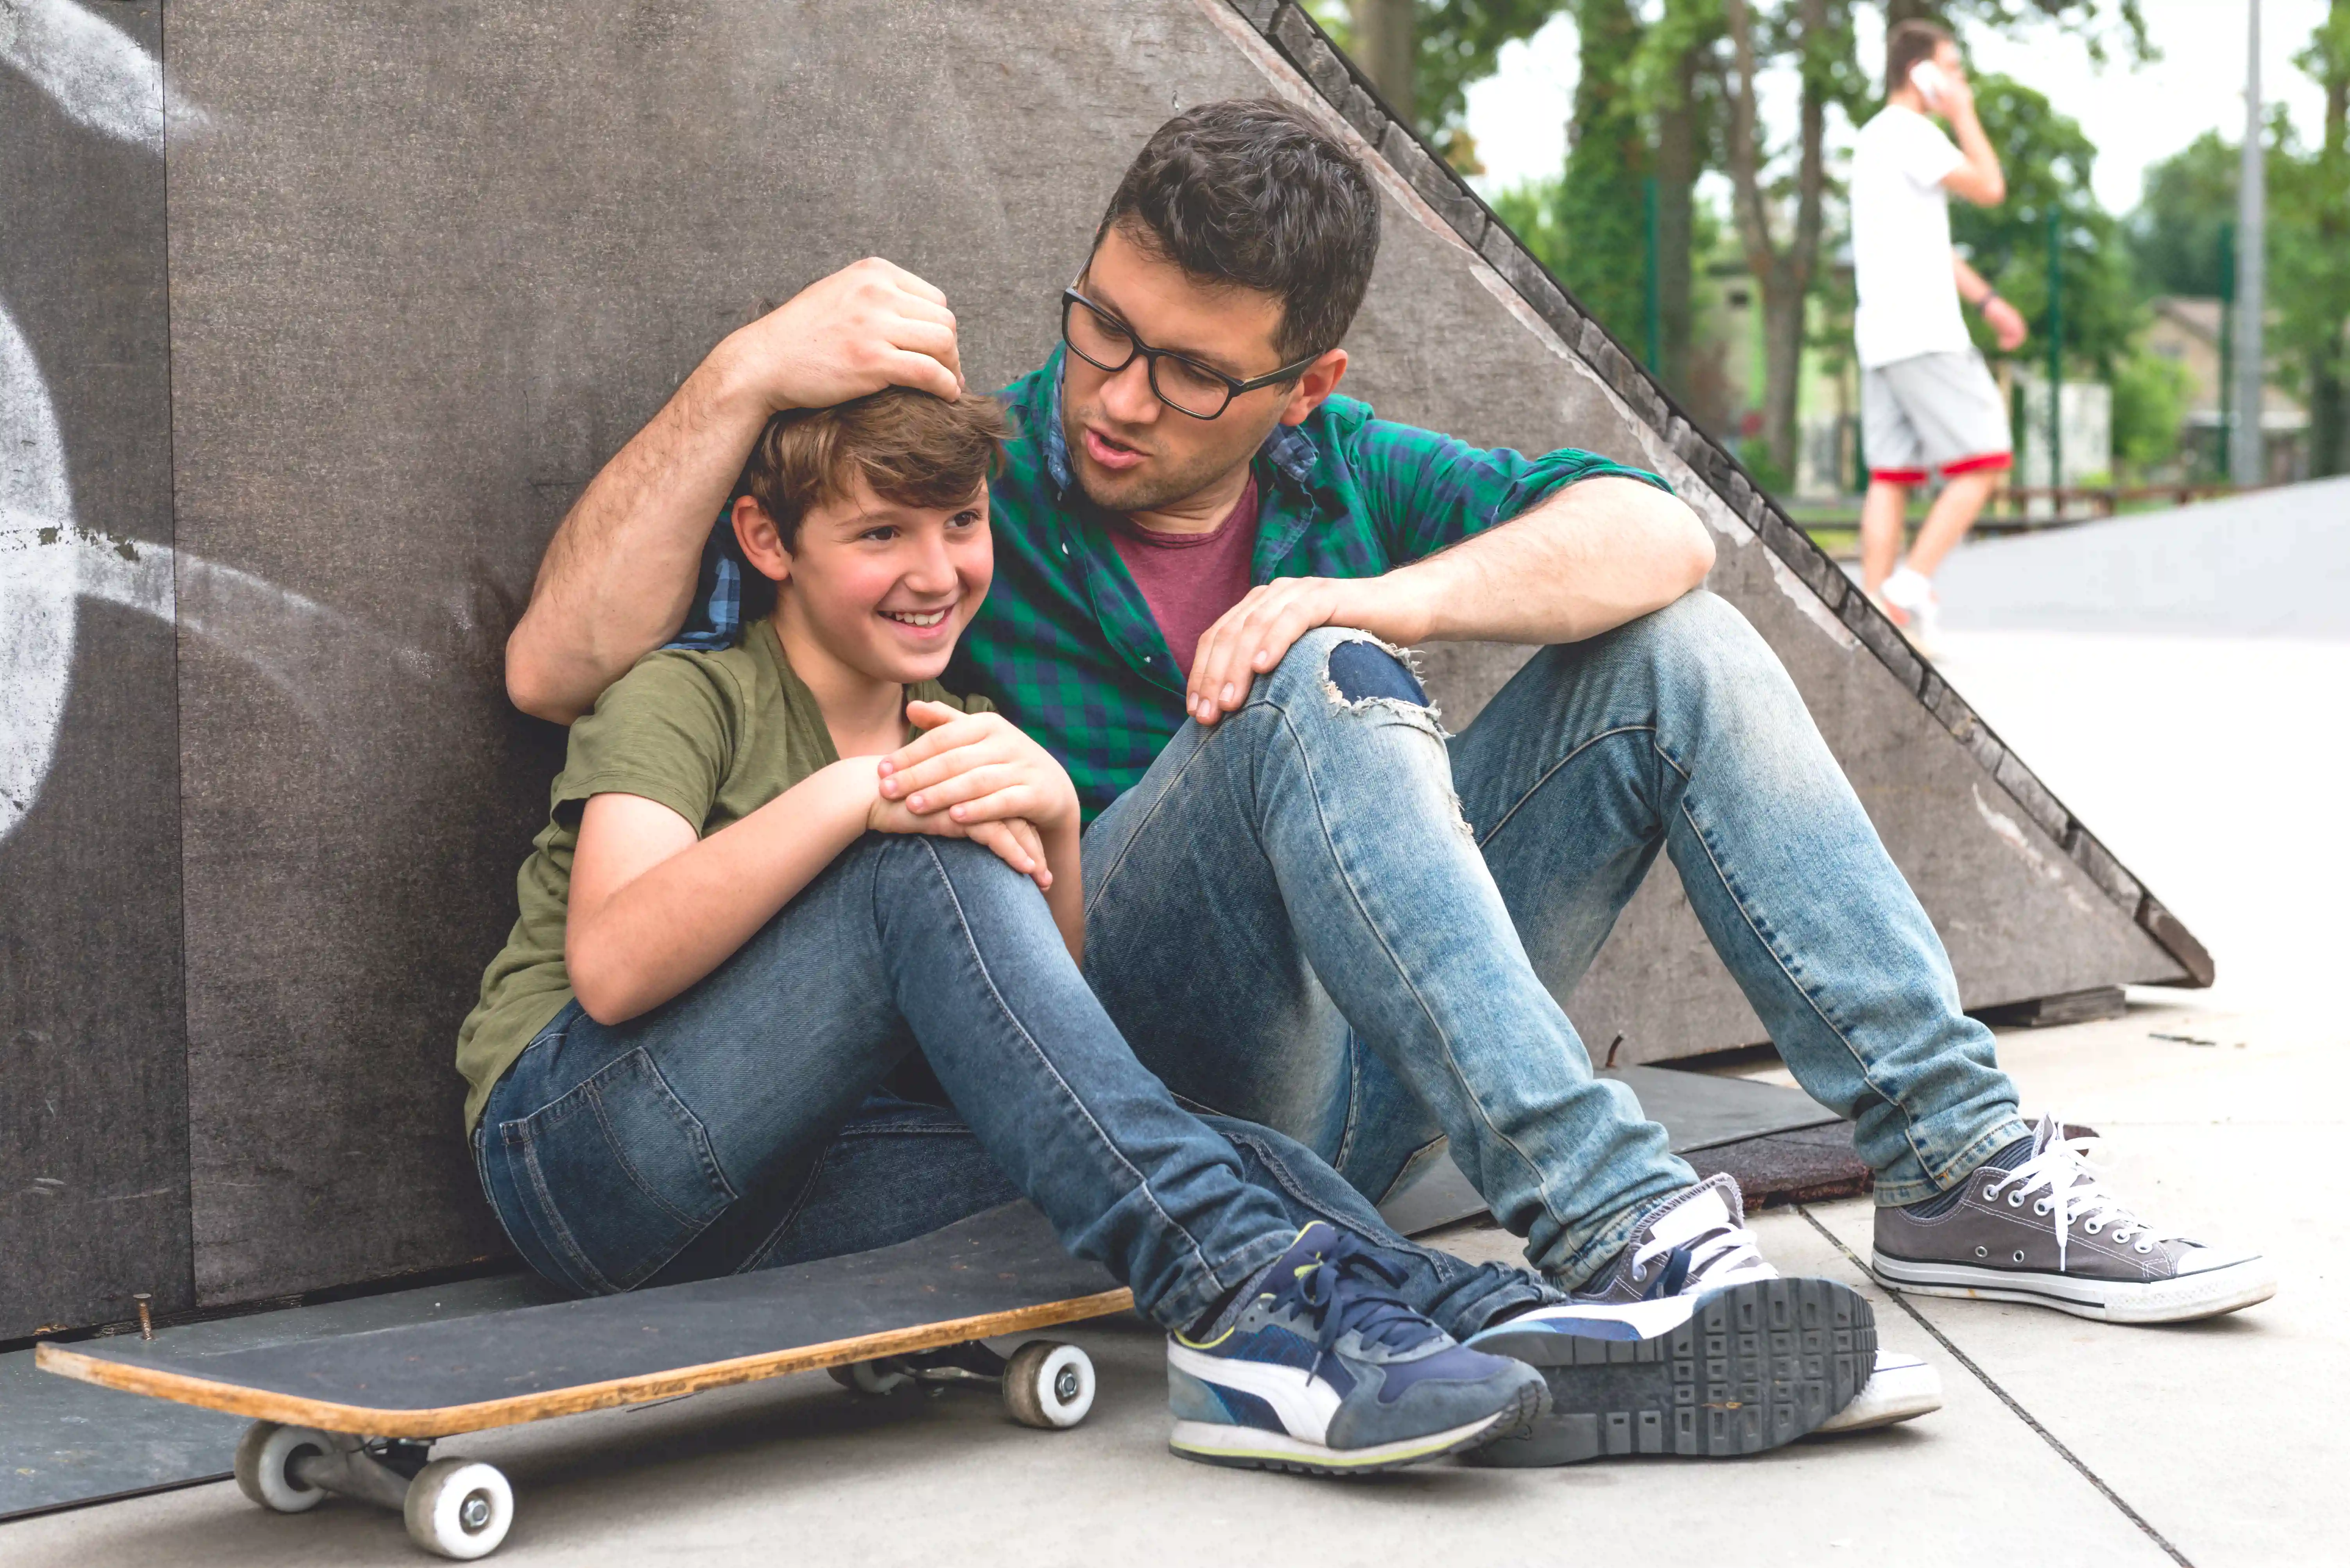 gro-up jongen krijgt aai over de bol in skatepark